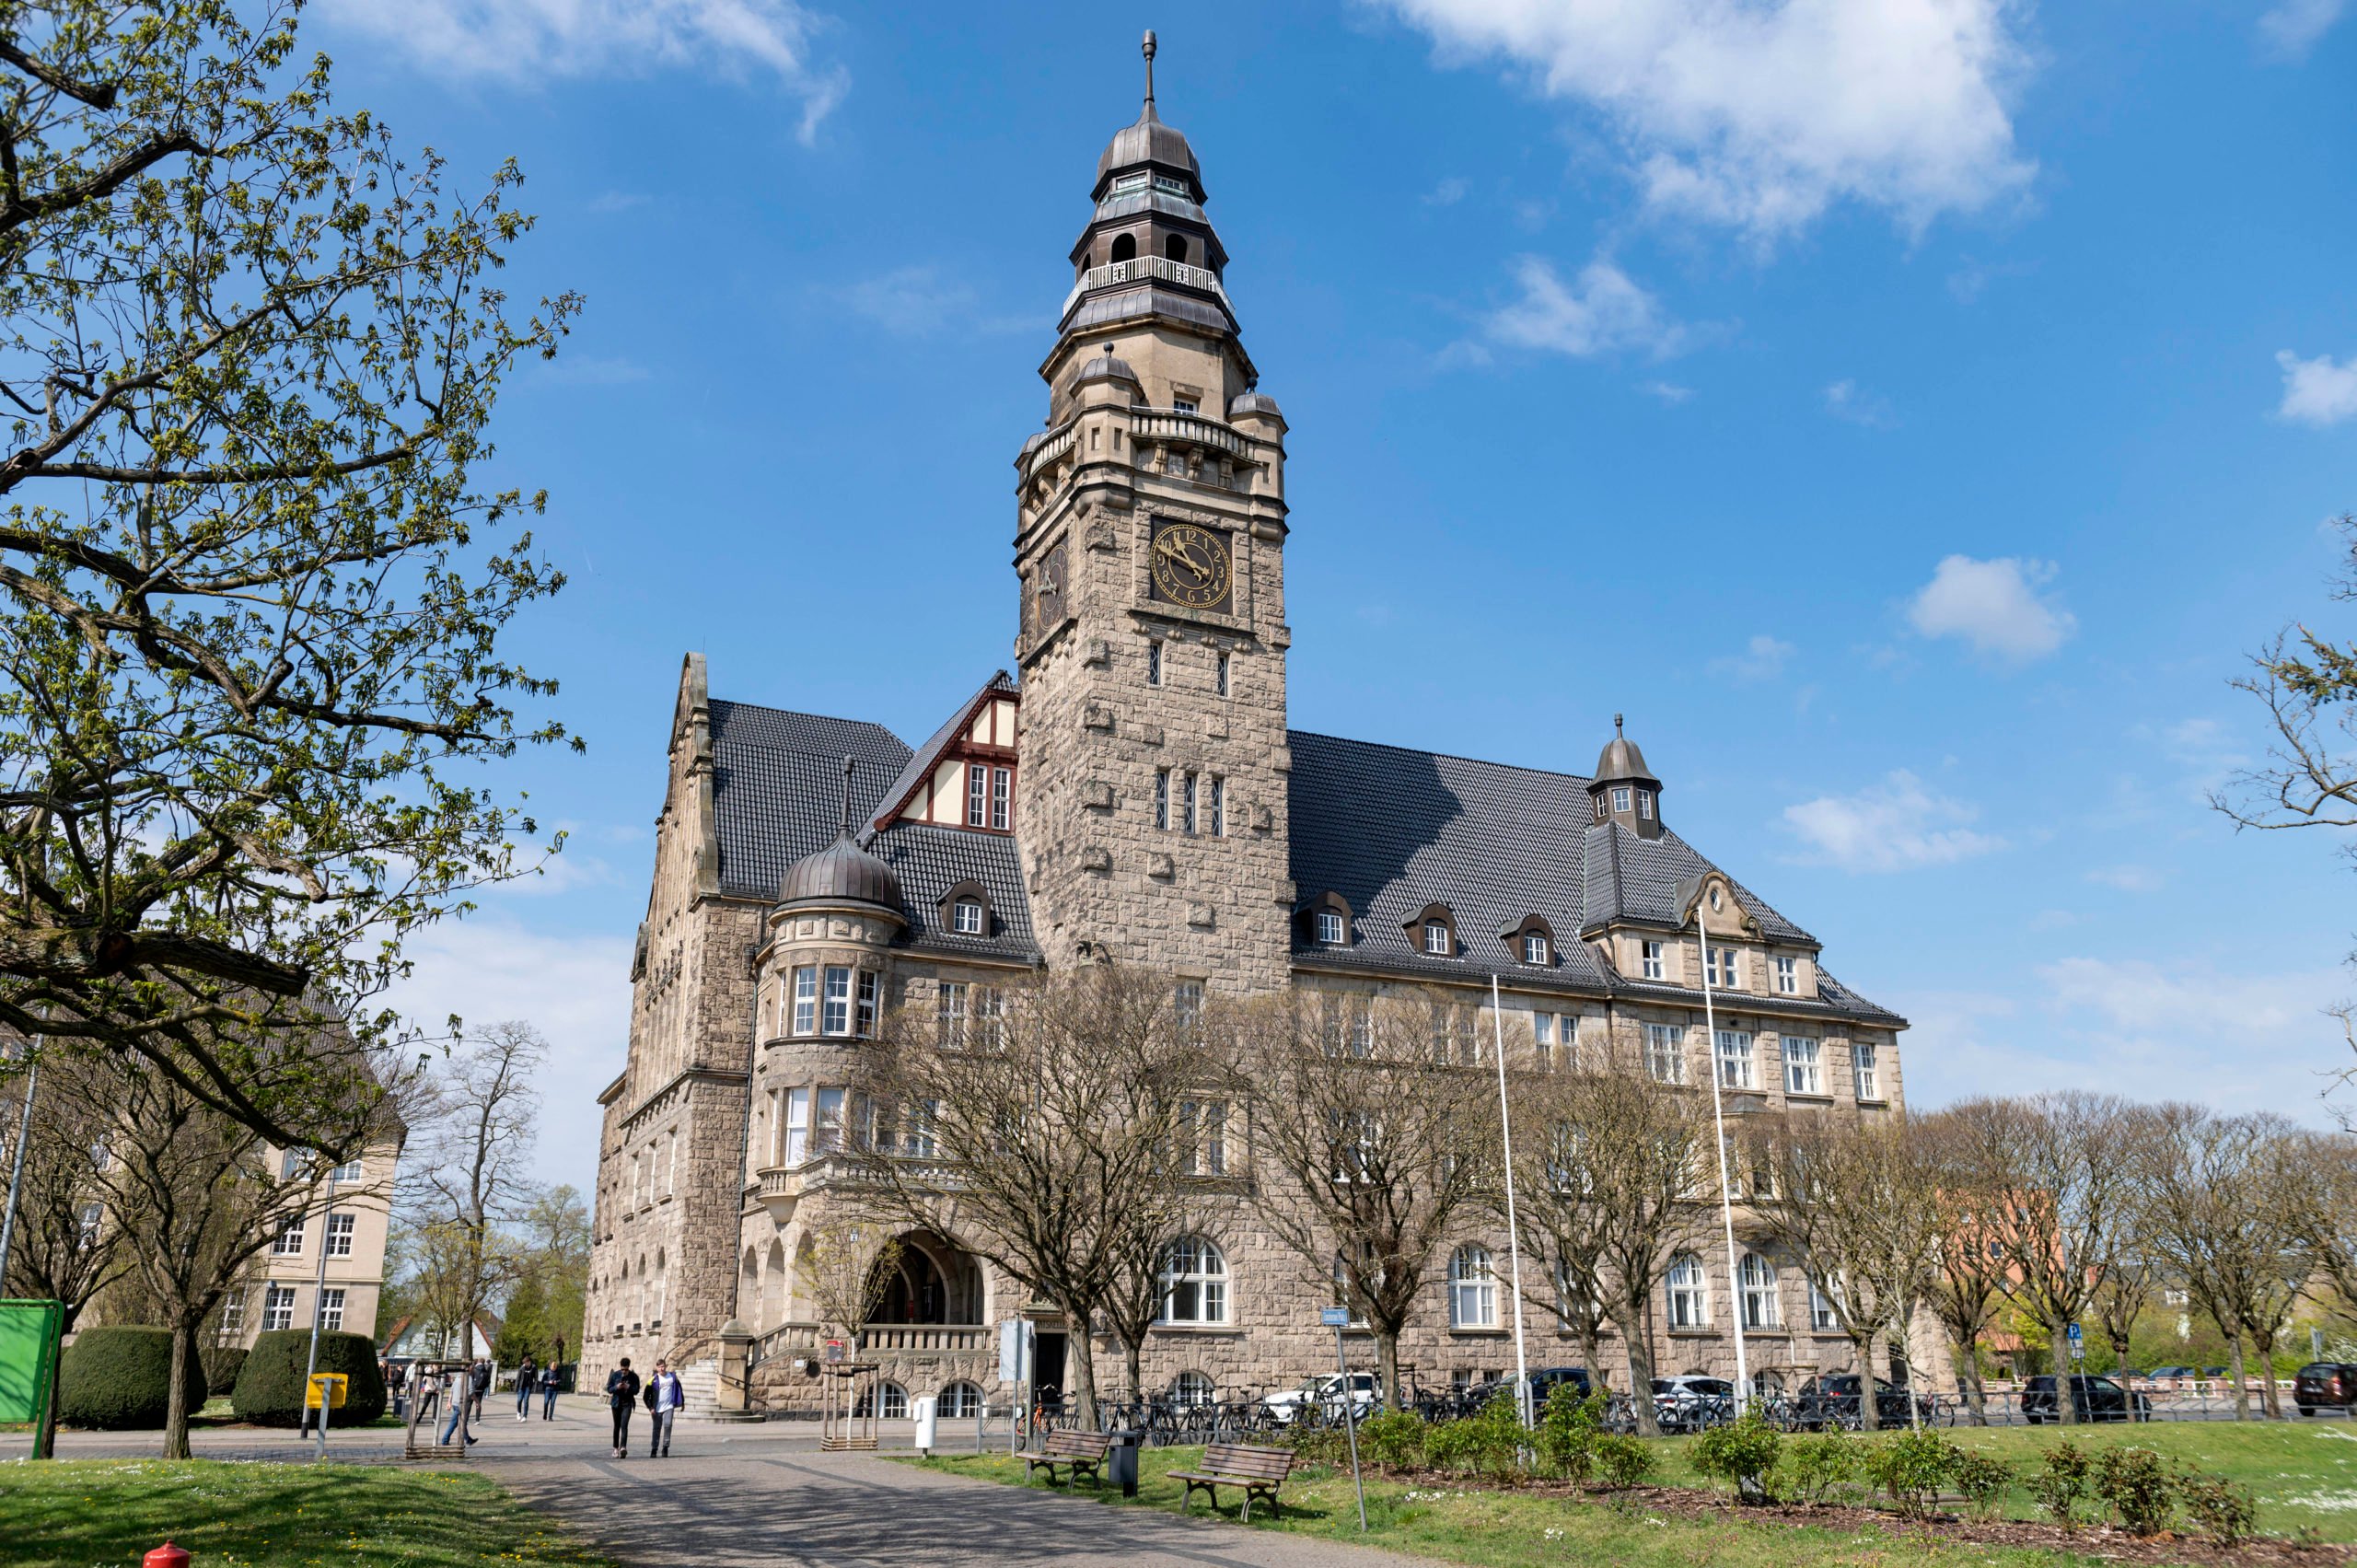 Das Rathaus Wittenberge ist einen Besuch wert. Foto: Imago/Richard Wareham